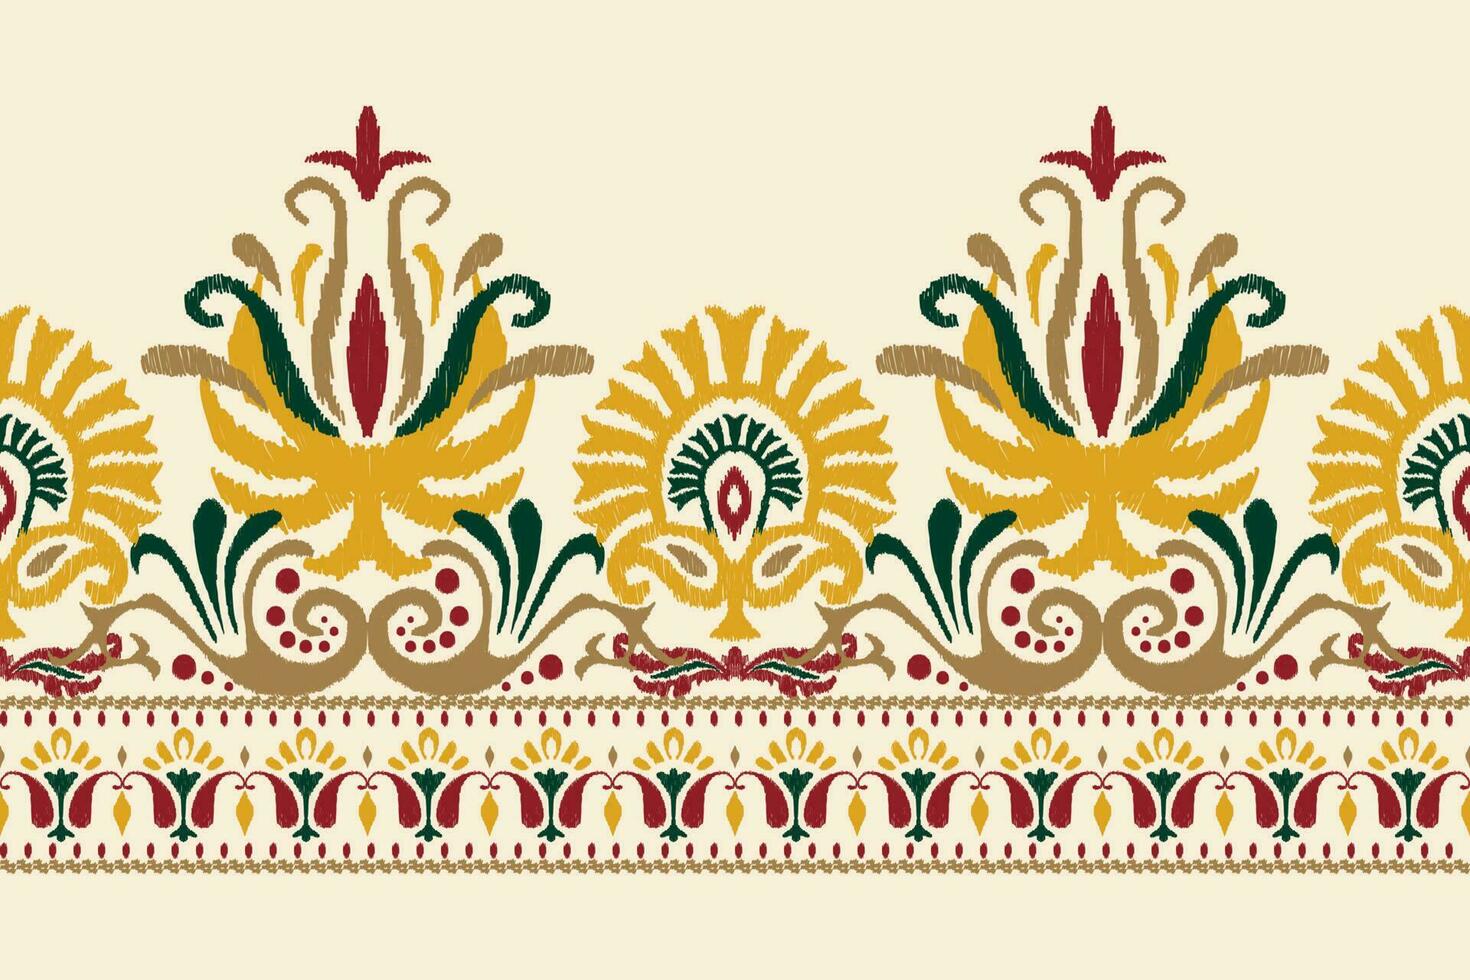 ikat floral paisley bordado em branco plano de fundo.ikat étnico oriental padronizar tradicional.asteca estilo abstrato vetor ilustração.design para textura,tecido,vestuário,embrulho,decoração,canga,cachecol